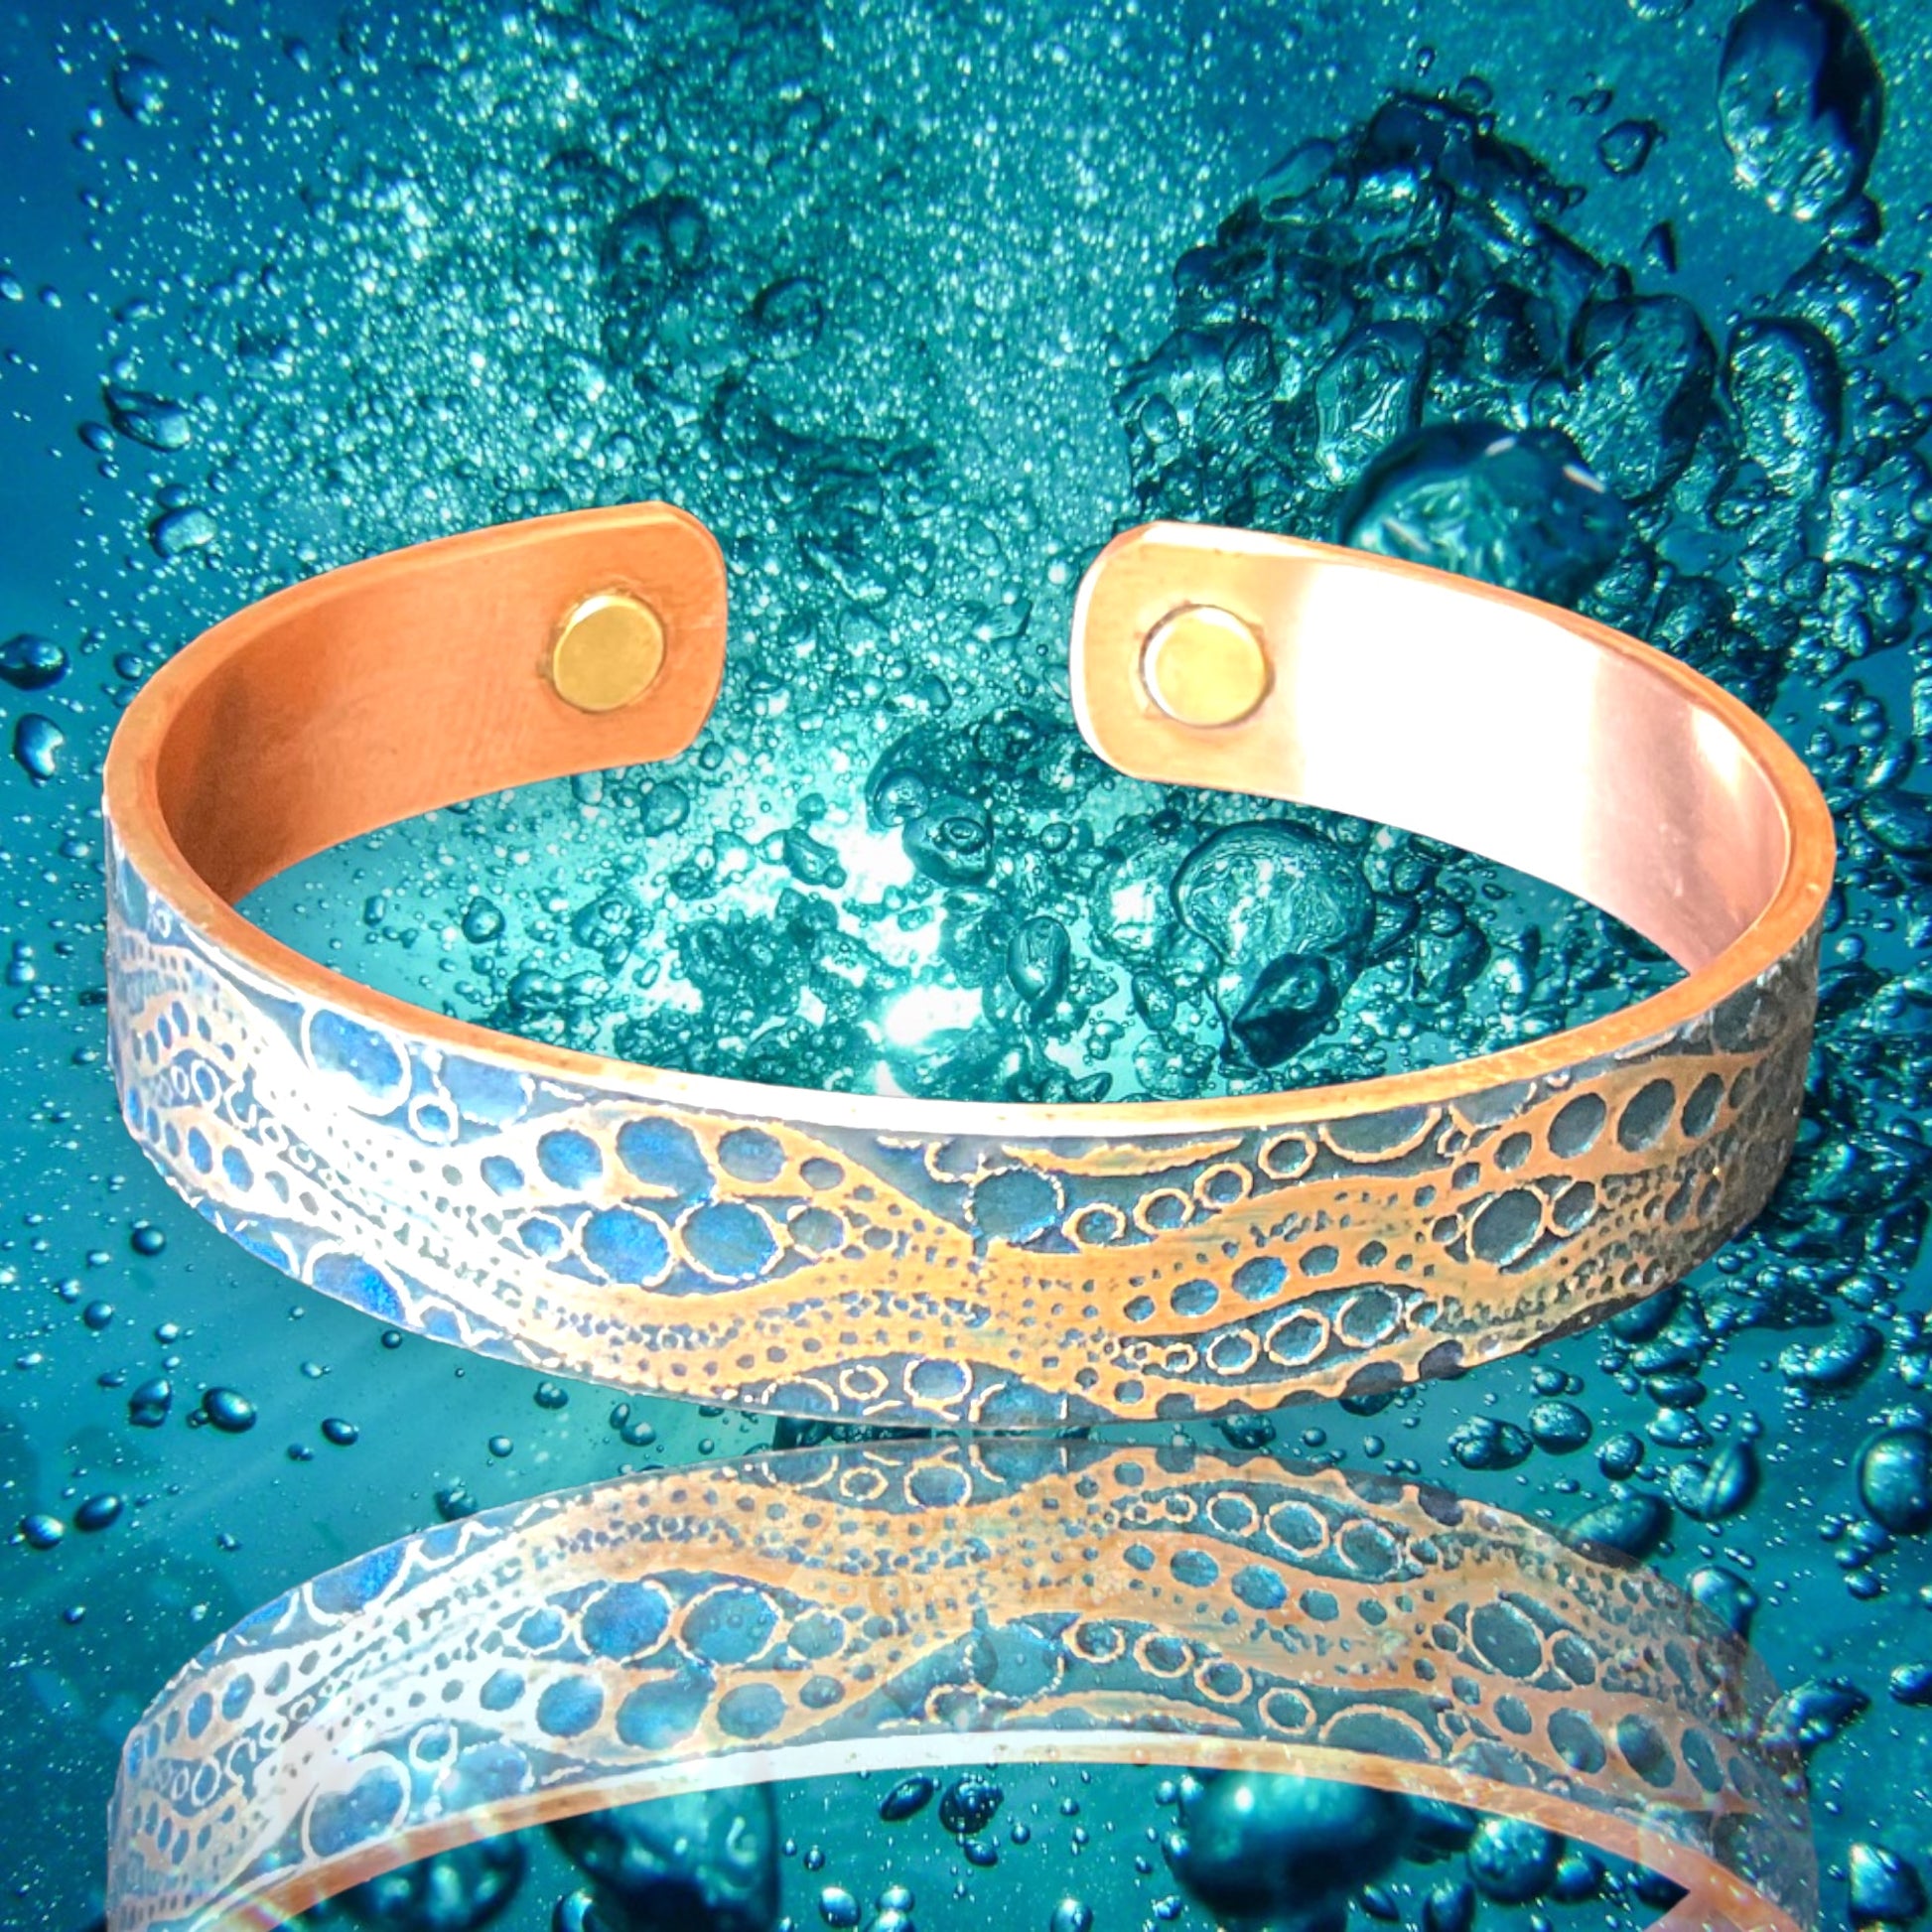 copper magnetic bracelets 